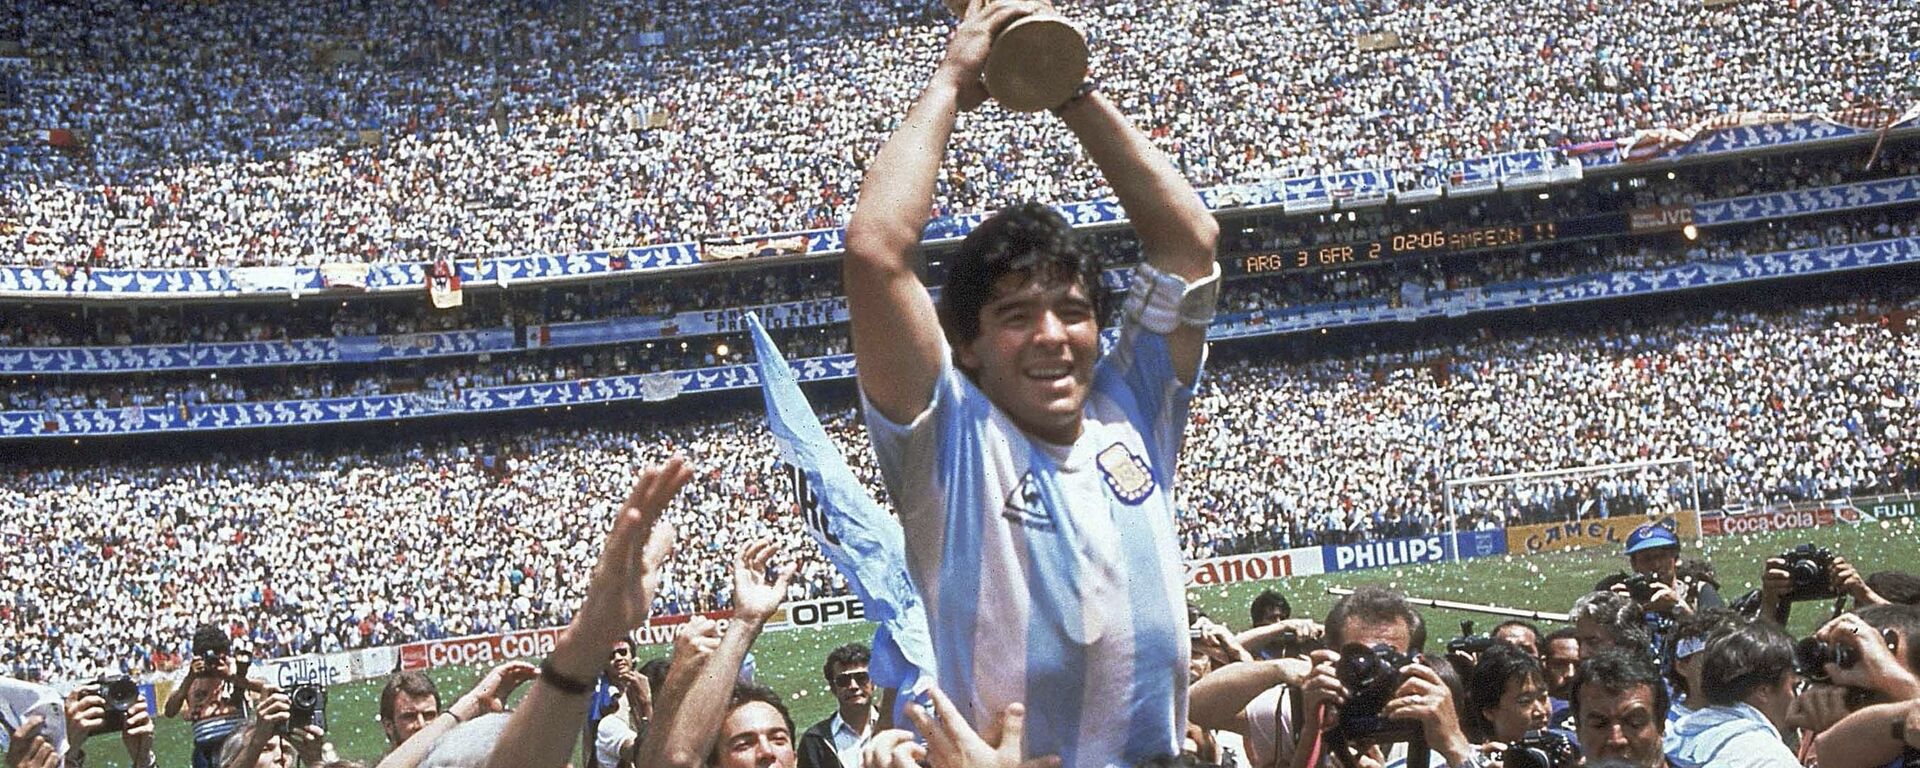 Diego Maradona sosteniendo la Copa del Mundo en 1986, en el Estadio Azteca. - Sputnik Mundo, 1920, 26.11.2020